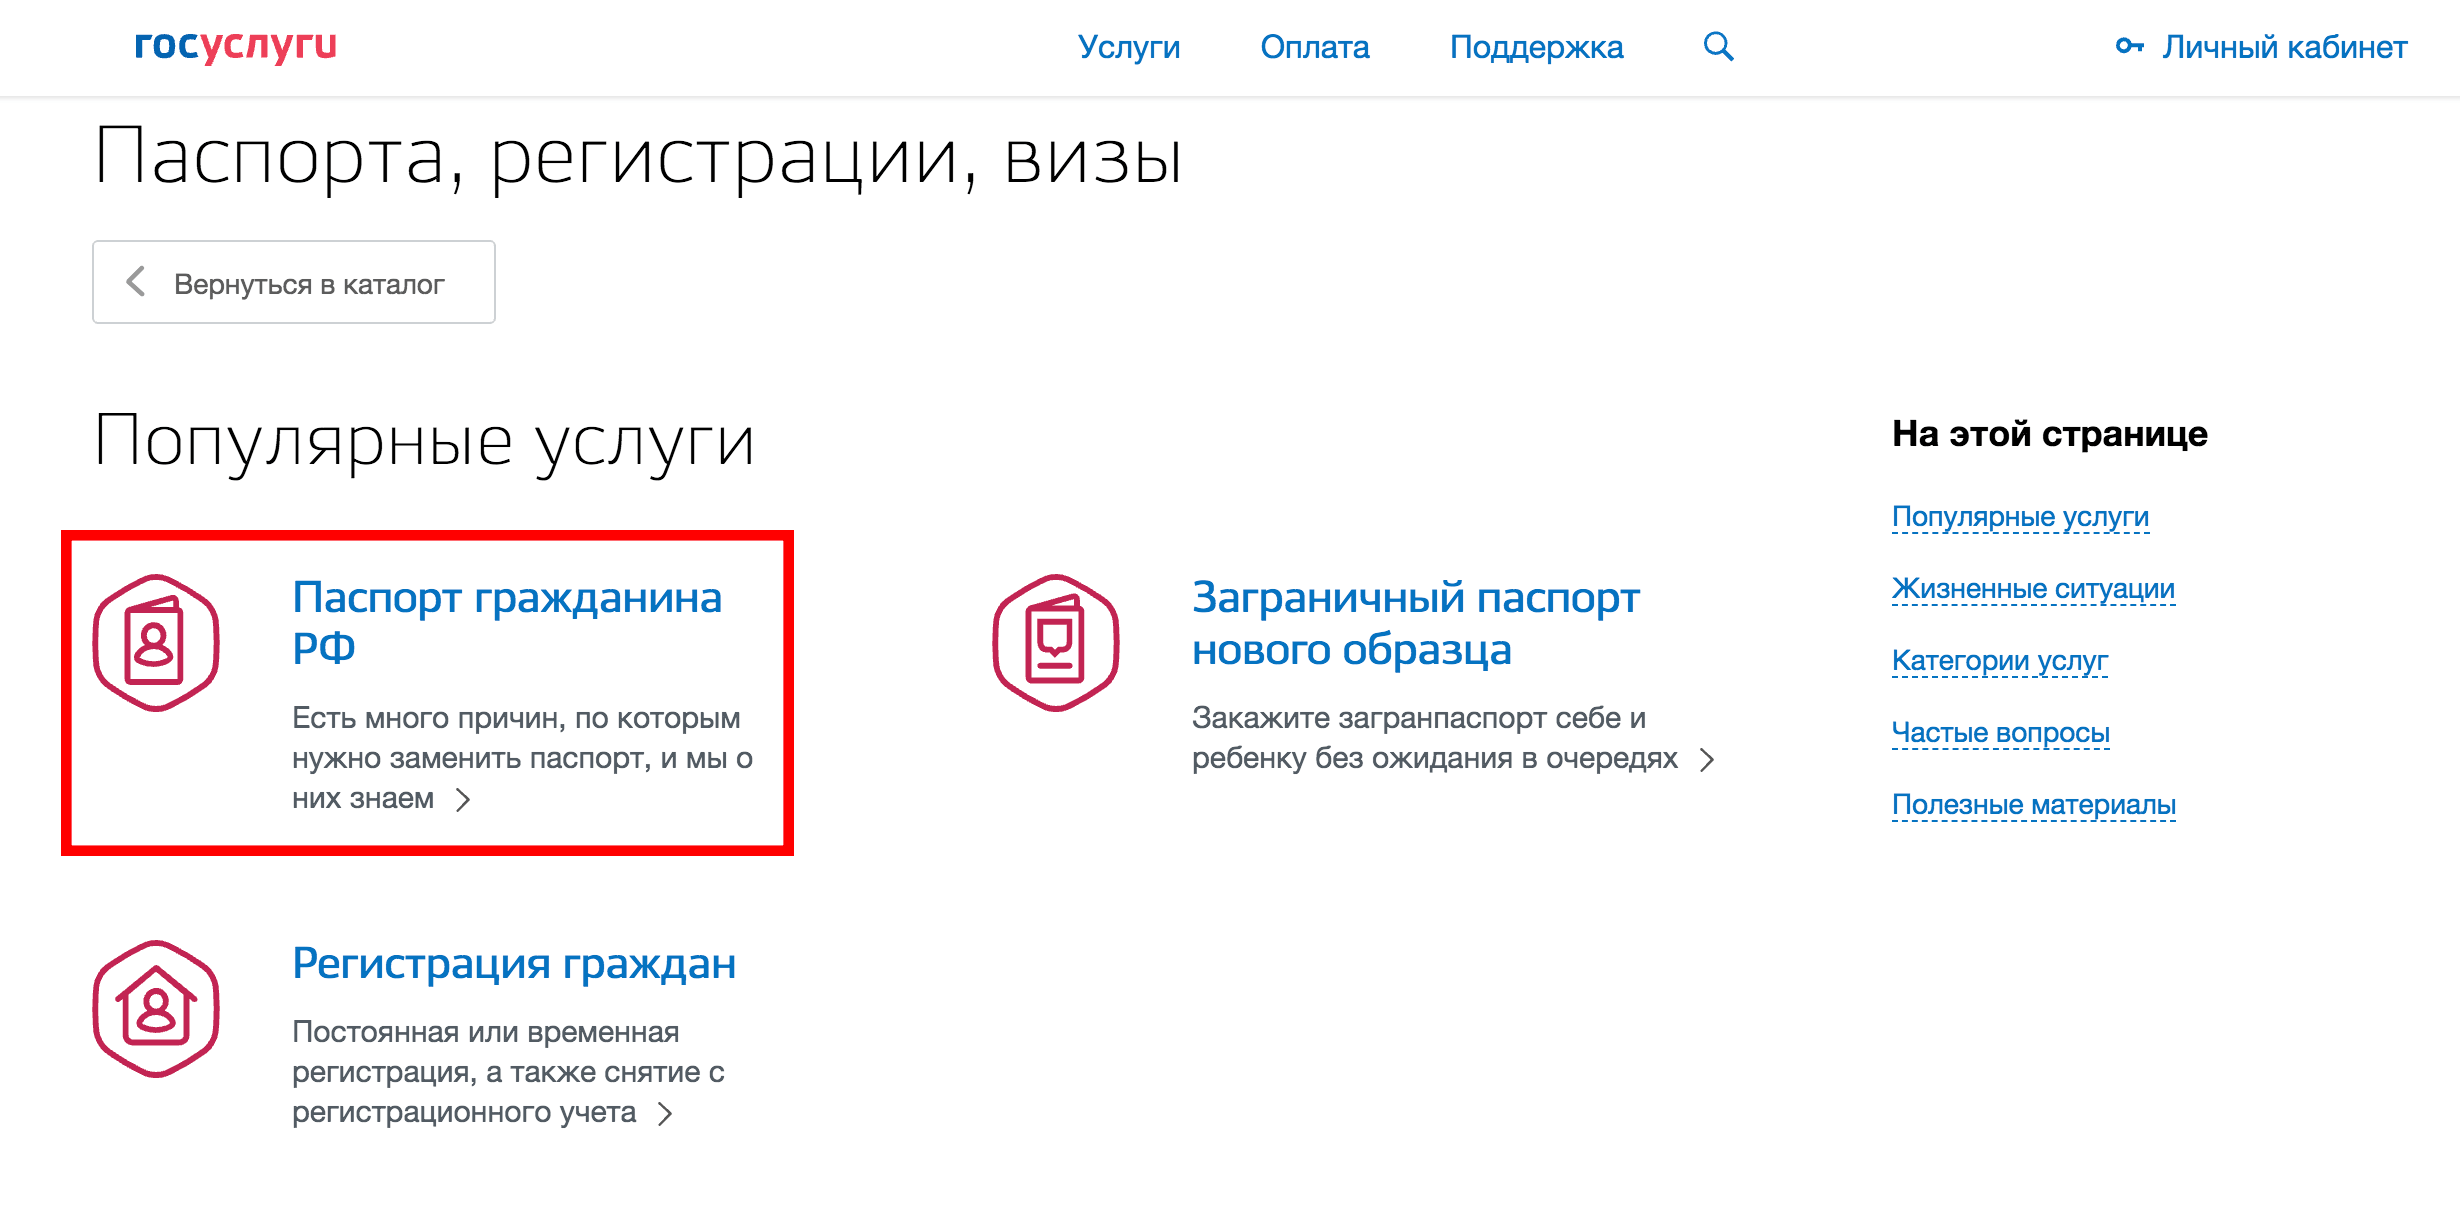 Как оплатить госпошлину за паспорт через портал госуслуг (для жителей Москвы)